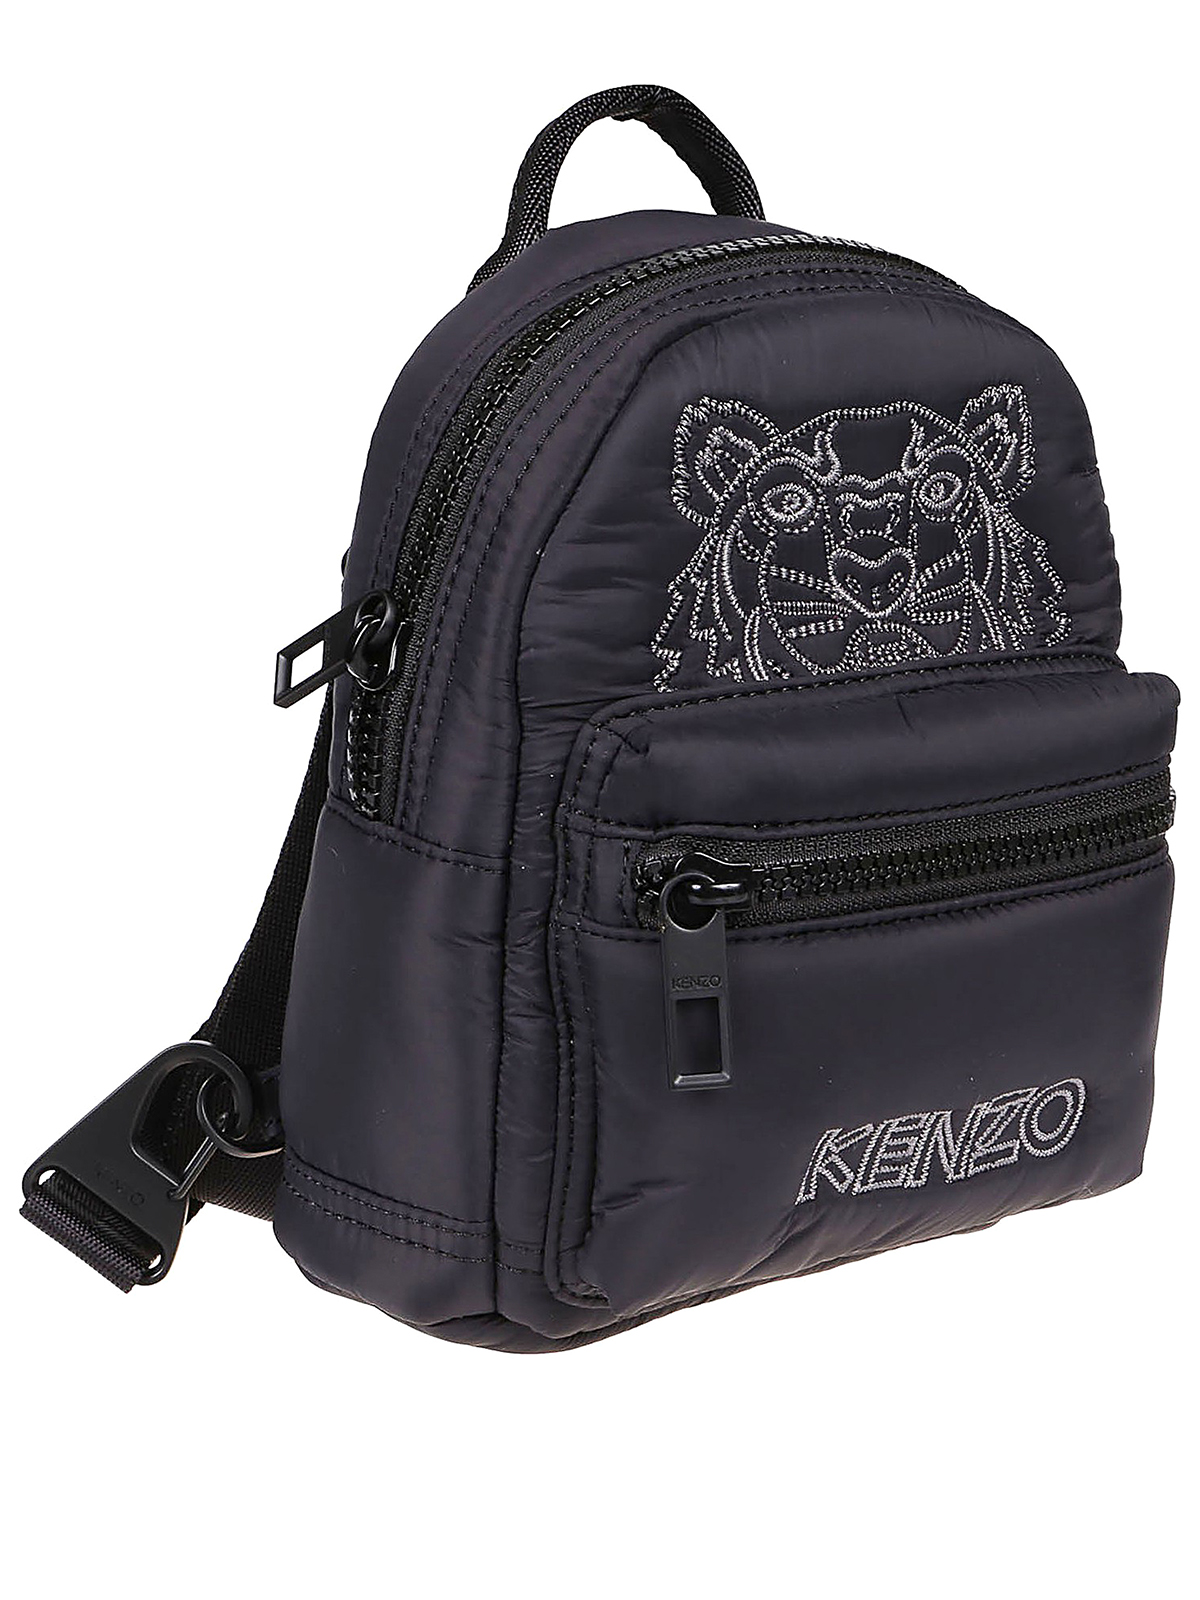 kenzo mini backpack price